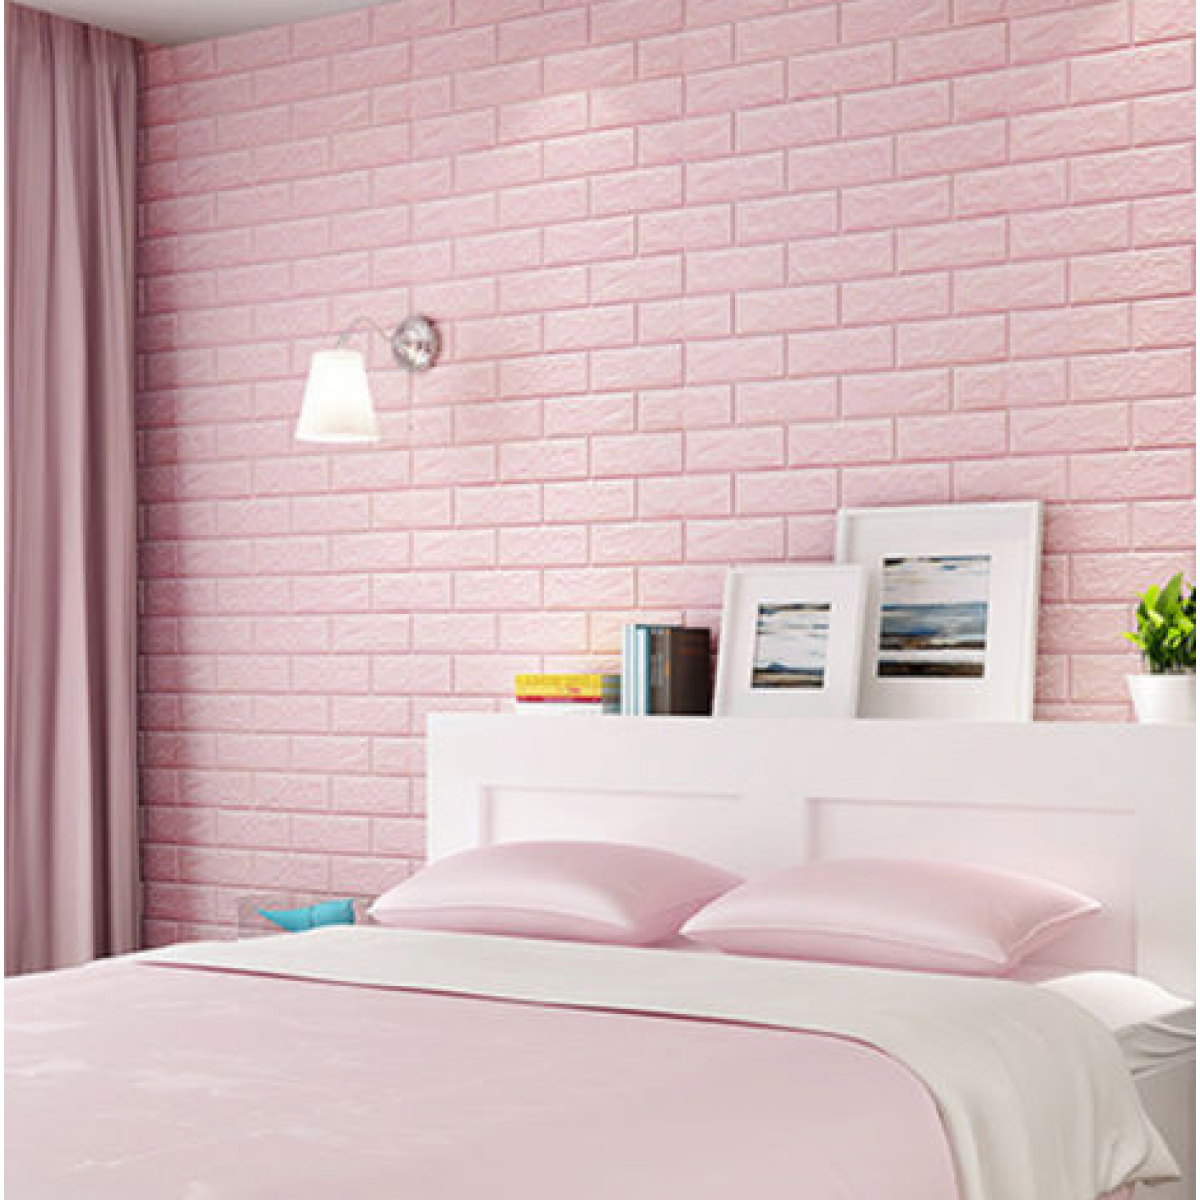 carta da parati in mattoni di schiuma,camera da letto,parete,rosa,camera,mobilia